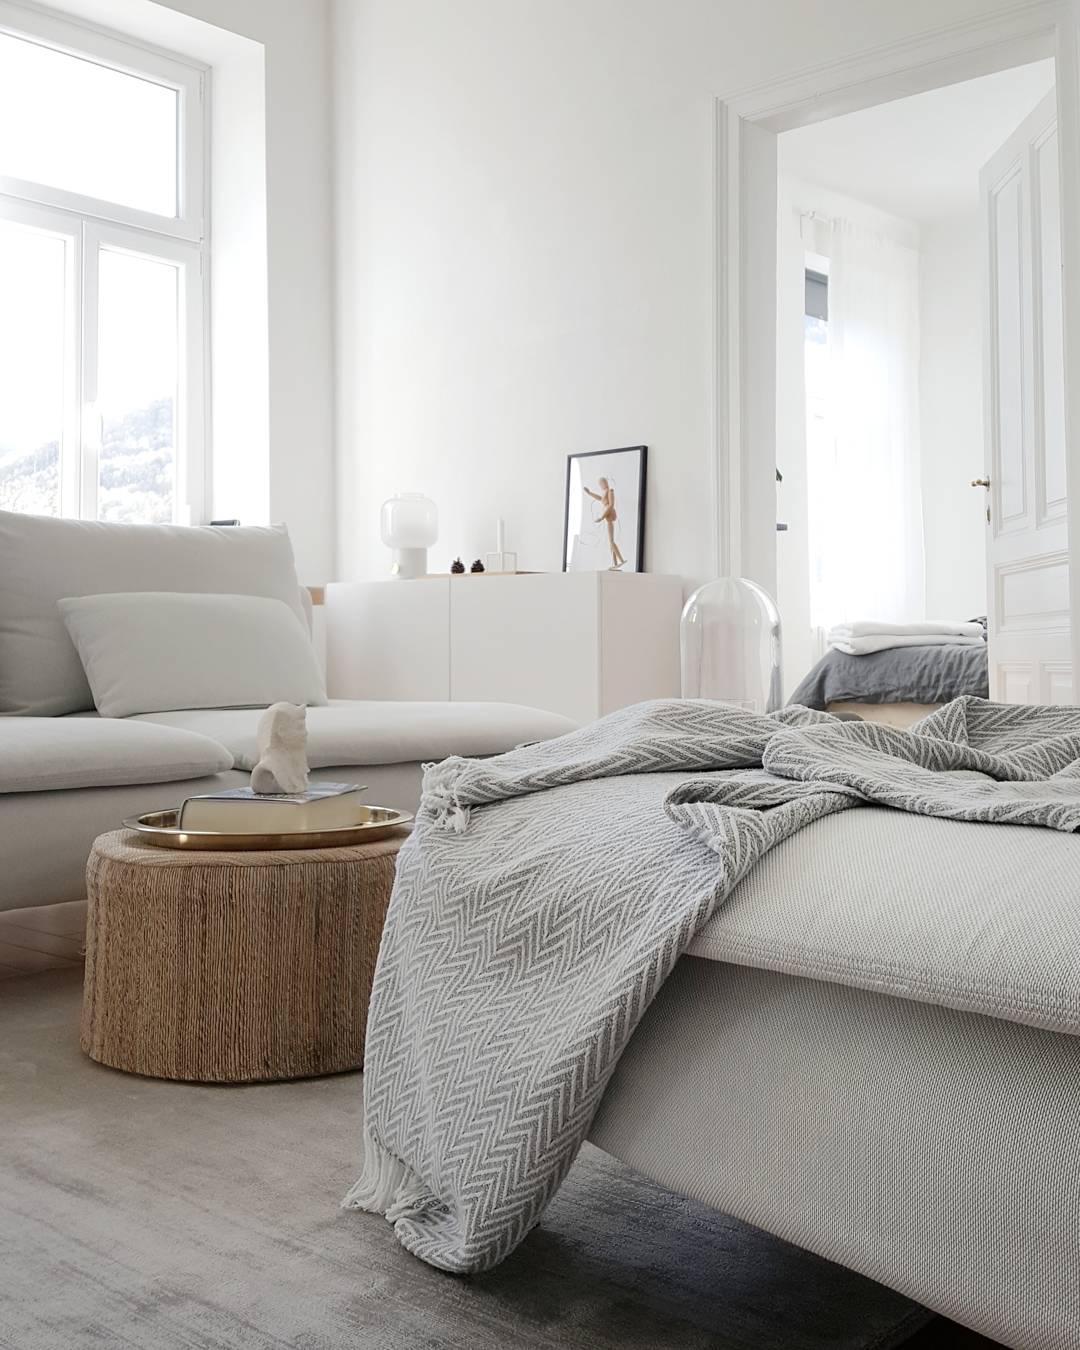 Herbstwohnzimmer #Wohnzimmer #weiss #grau #skandinavisch #minimalism #interior #altbau #couch